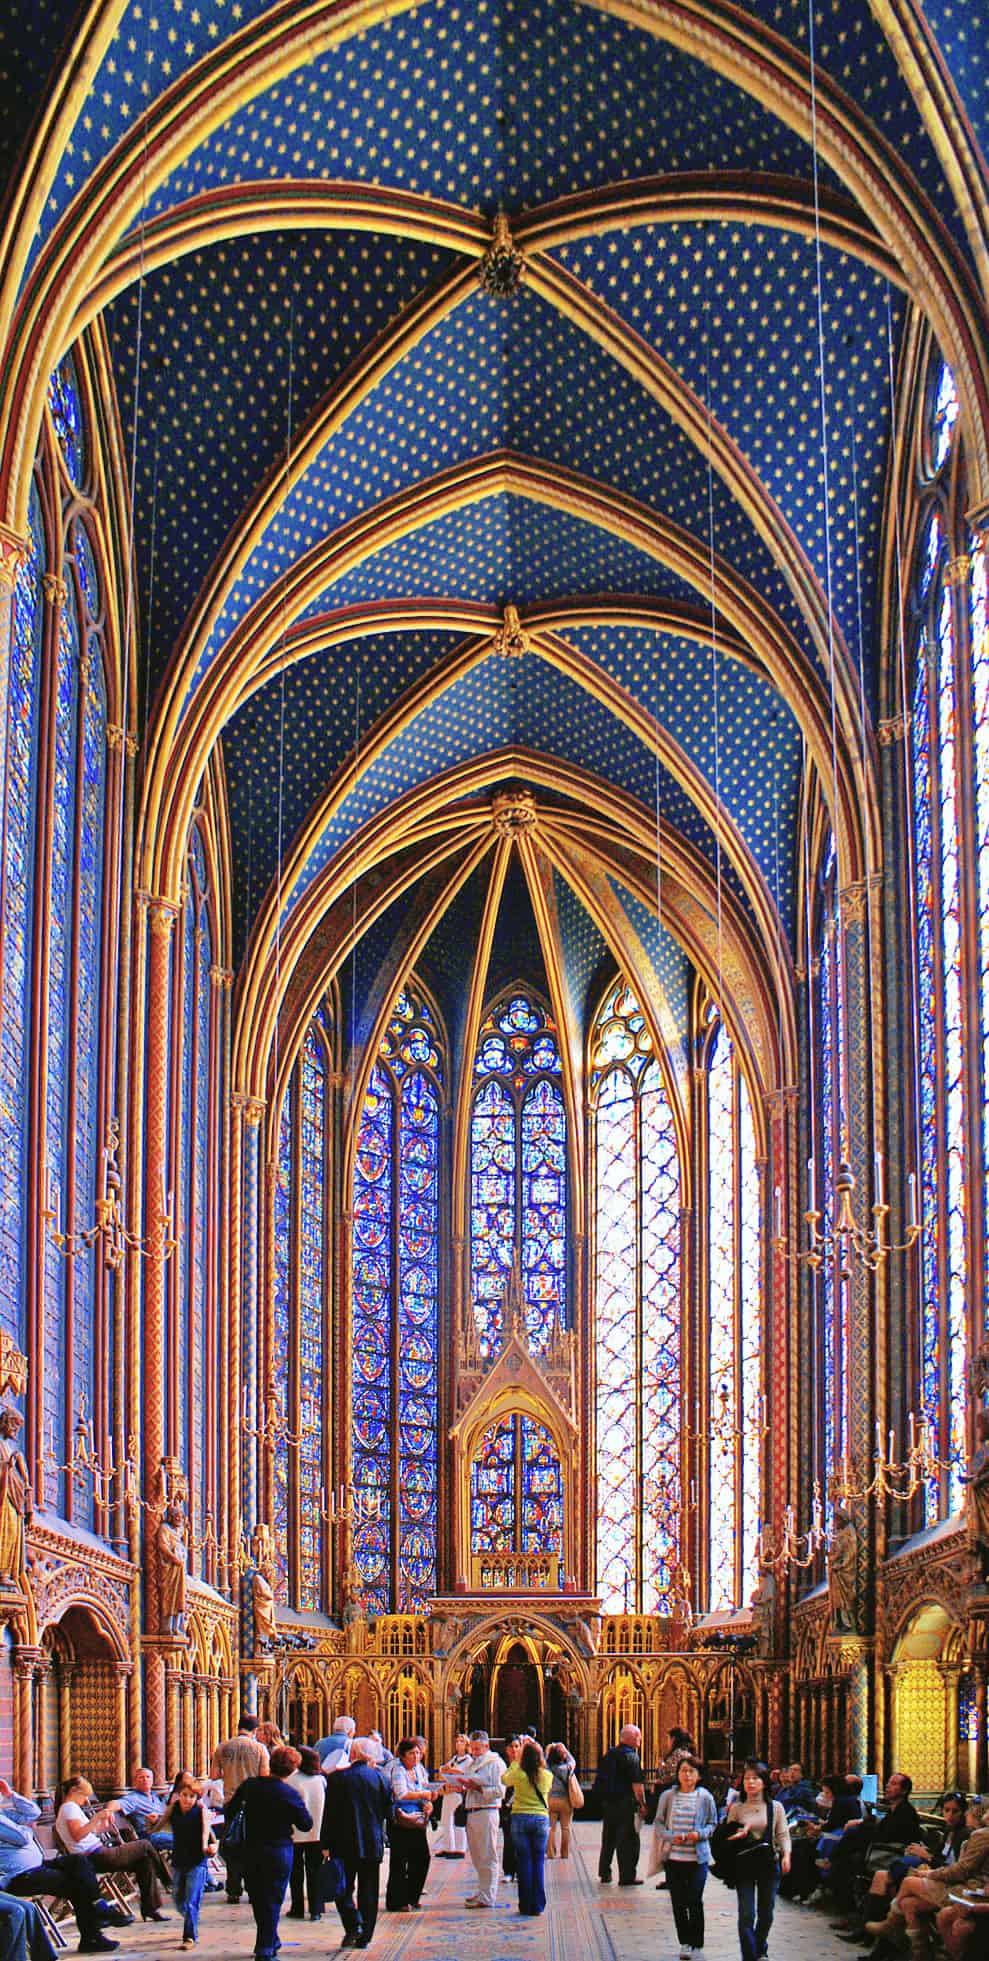 Un templo gótico que parece de paredes de cristal en París (Sainte  Chapelle) #RelatodeViaje - 101 Lugares increíbles